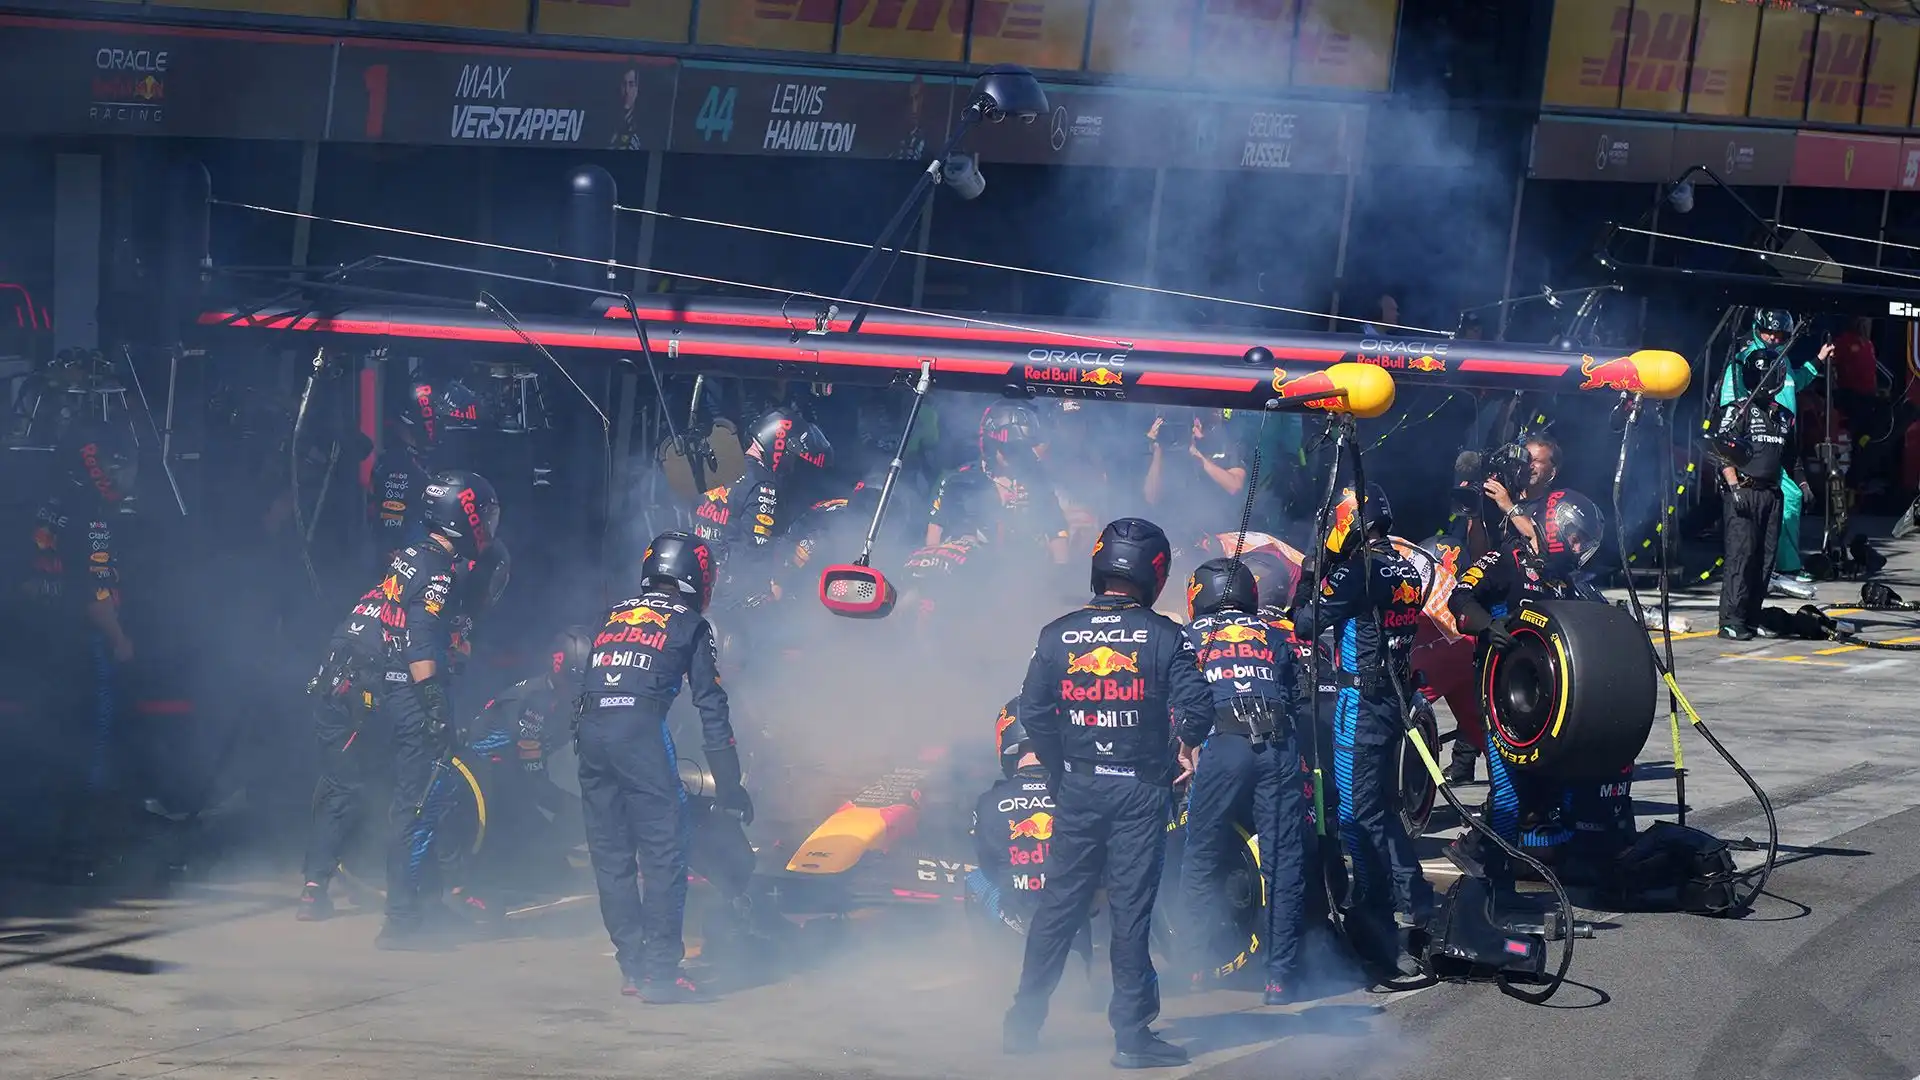 La Red Bull sta cercando di capire le ragioni del guaio ai freni che è costato il Gran Premio a Max Verstappen